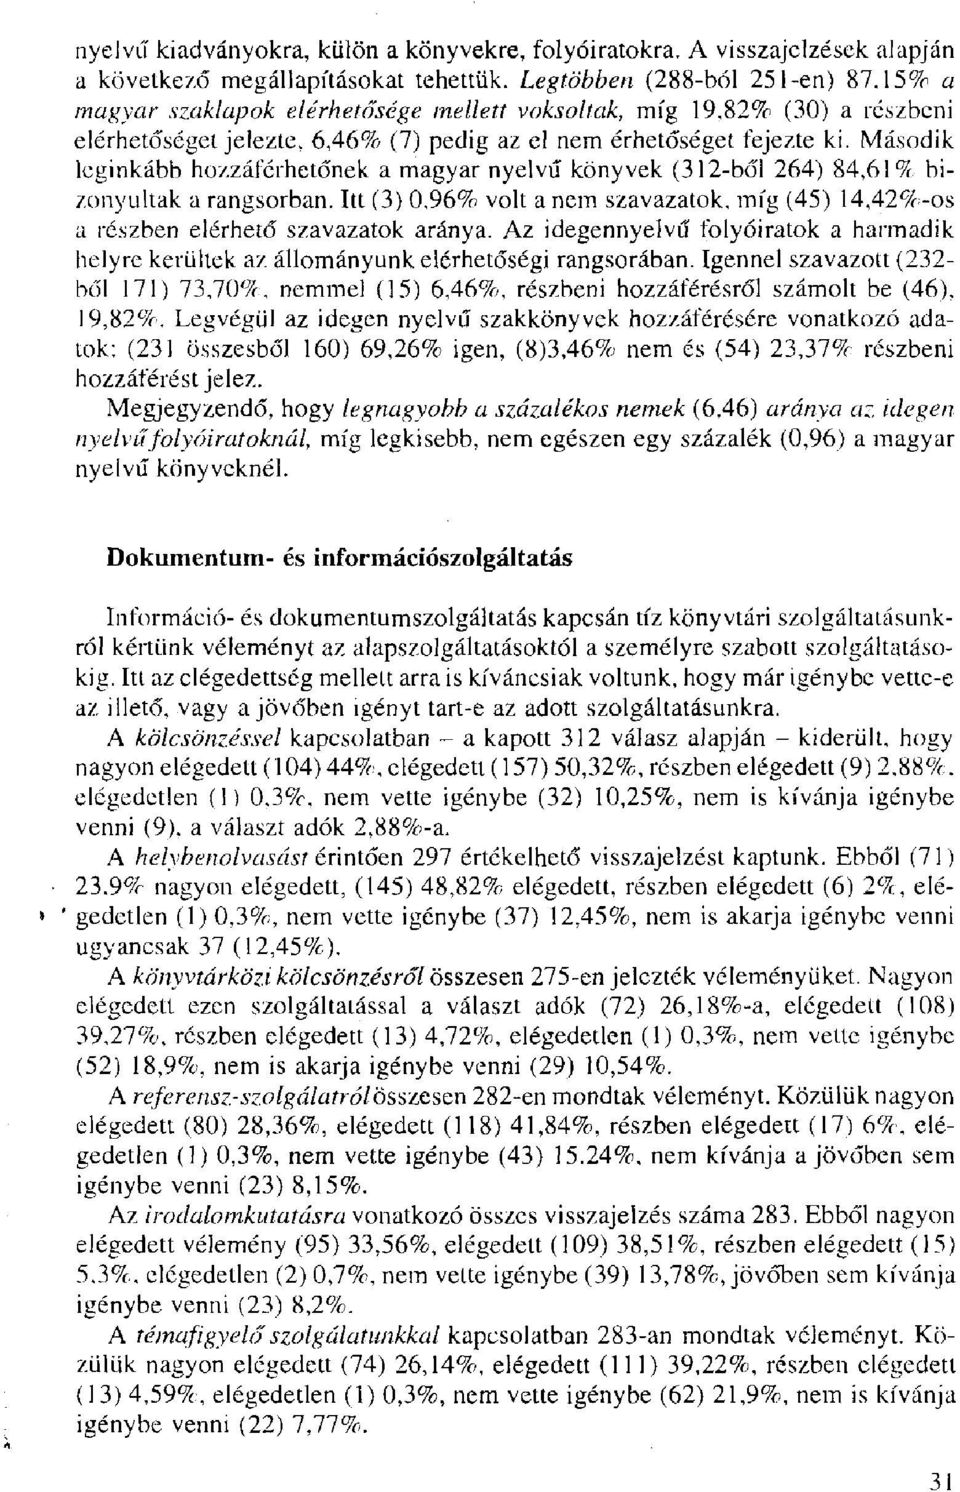 Második leginkább hozzáférhetőnek a magyar nyelvű könyvek (312-ből 264) 84,61% bizonyultak a rangsorban. Itt (3) 0,96% volt a nem szavazatok, míg (45) 14,42%-os a részben elérhető szavazatok aránya.